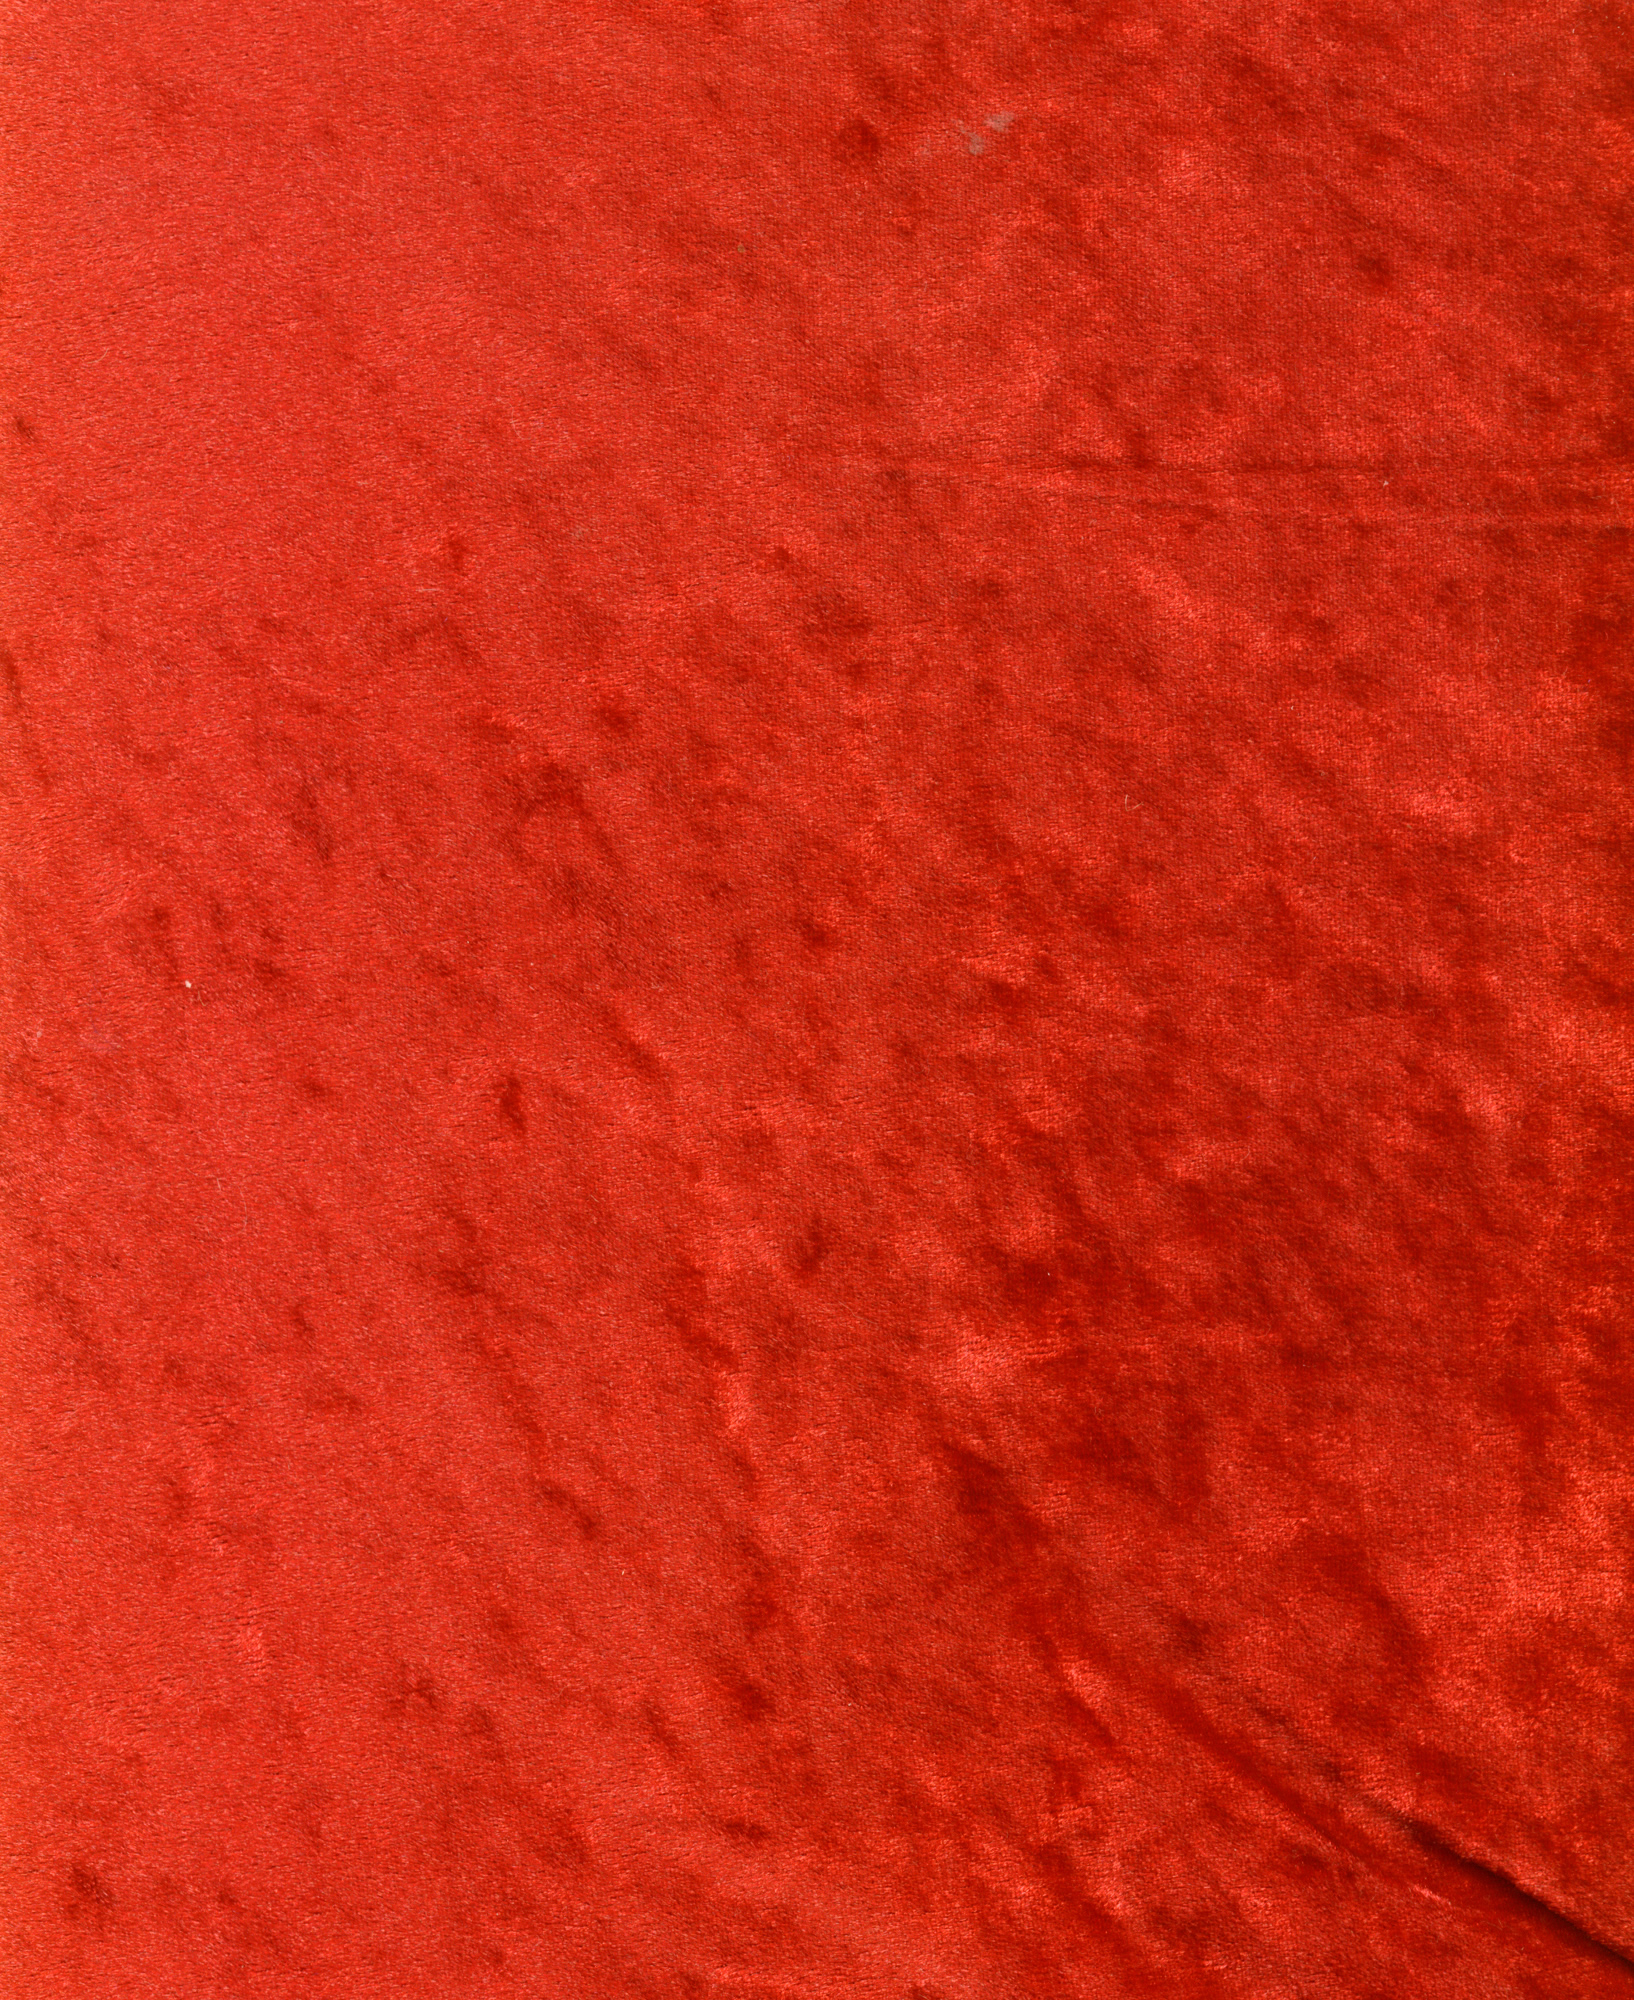 Красный бархат, текстура, фон, red velvet texture